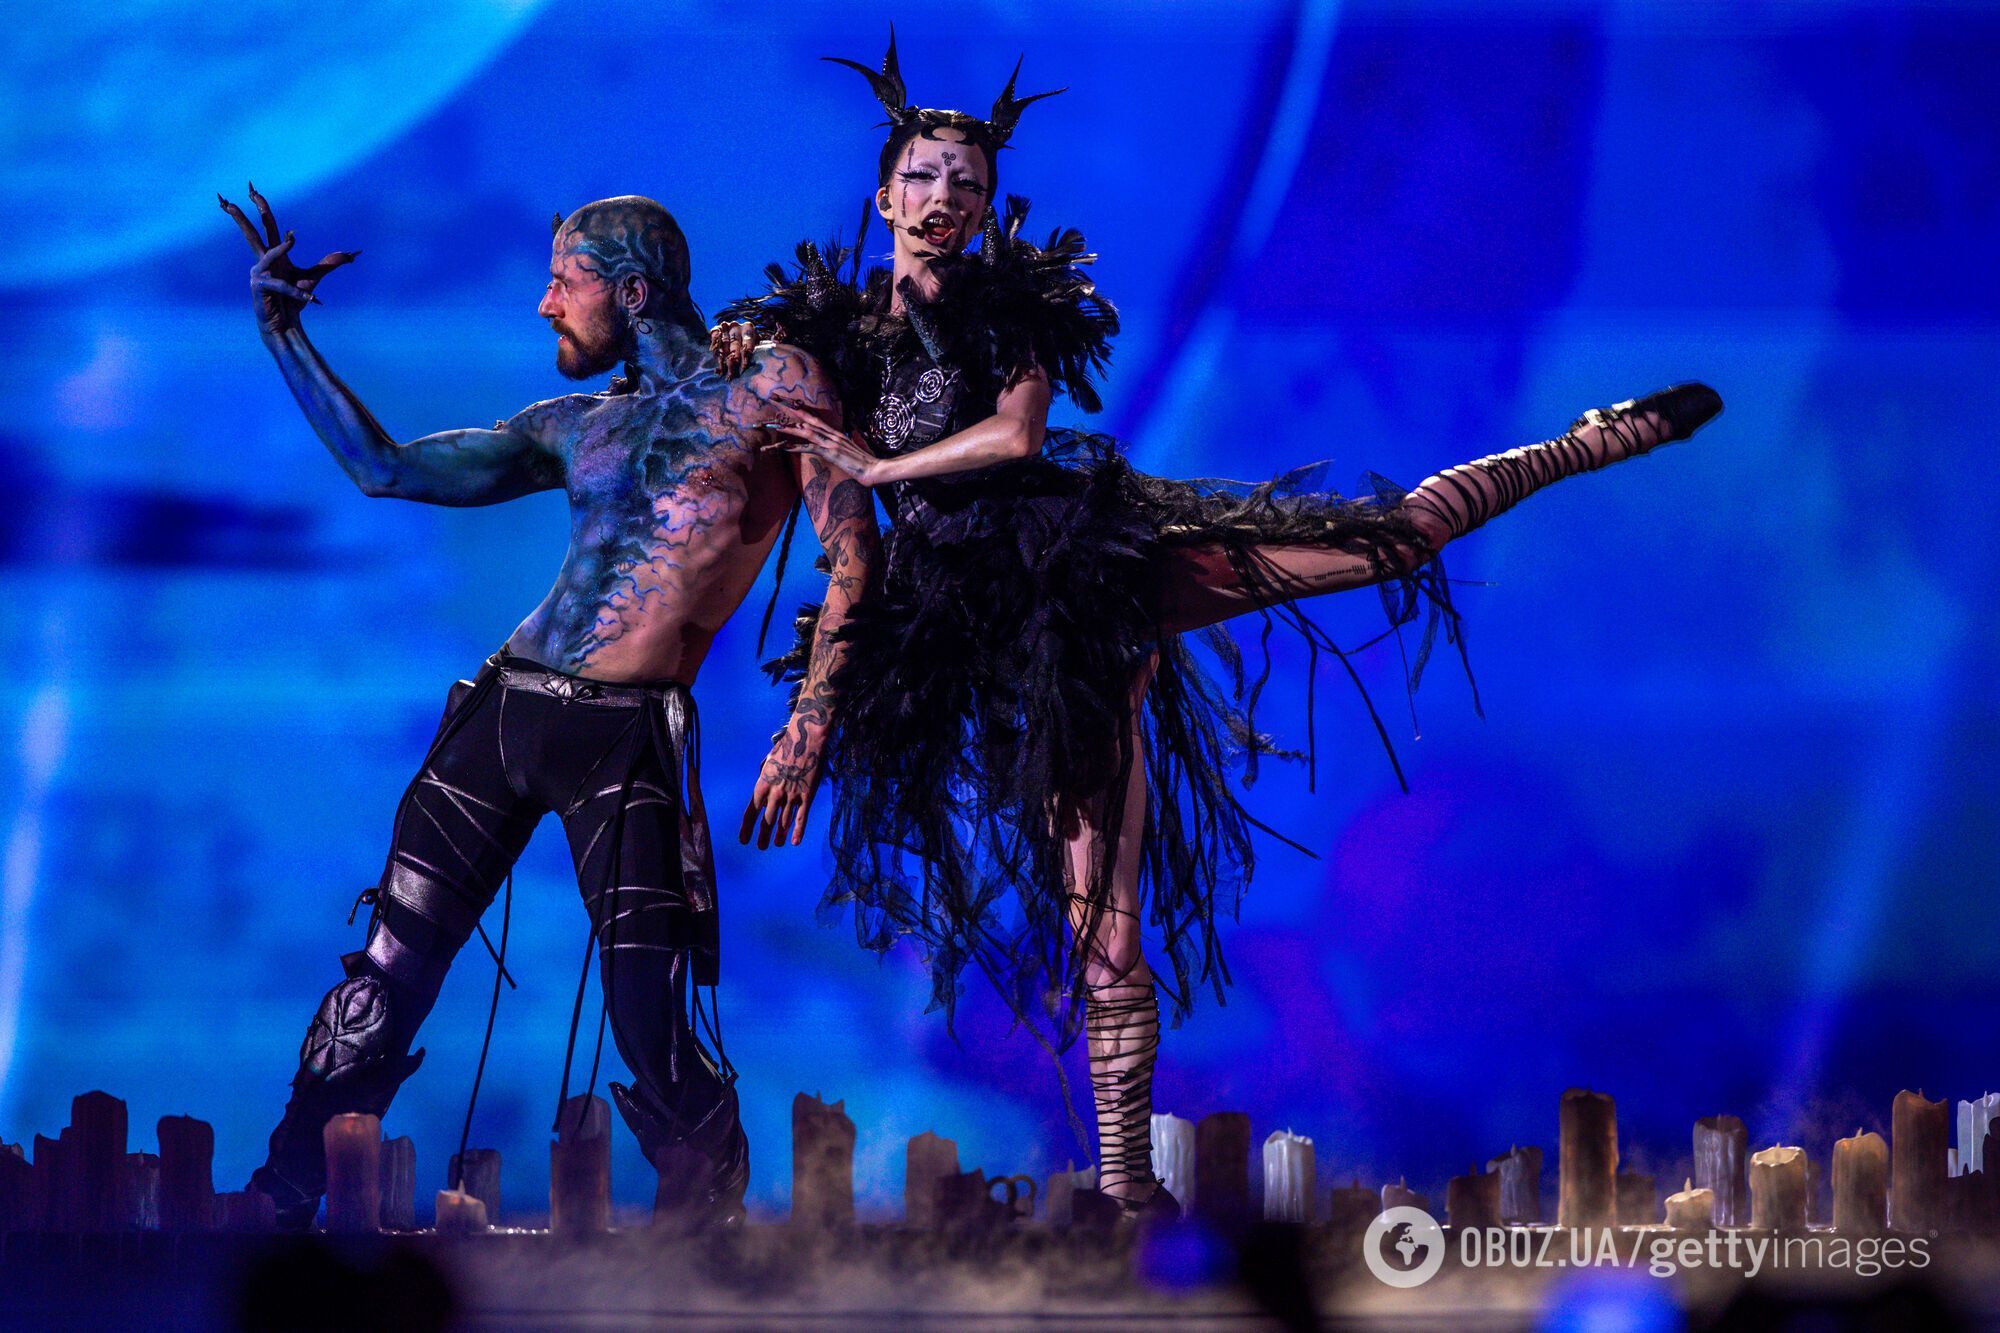 Украина в финале! Результаты первого полуфинала Евровидения 2024: хроника, фото и видео выступлений